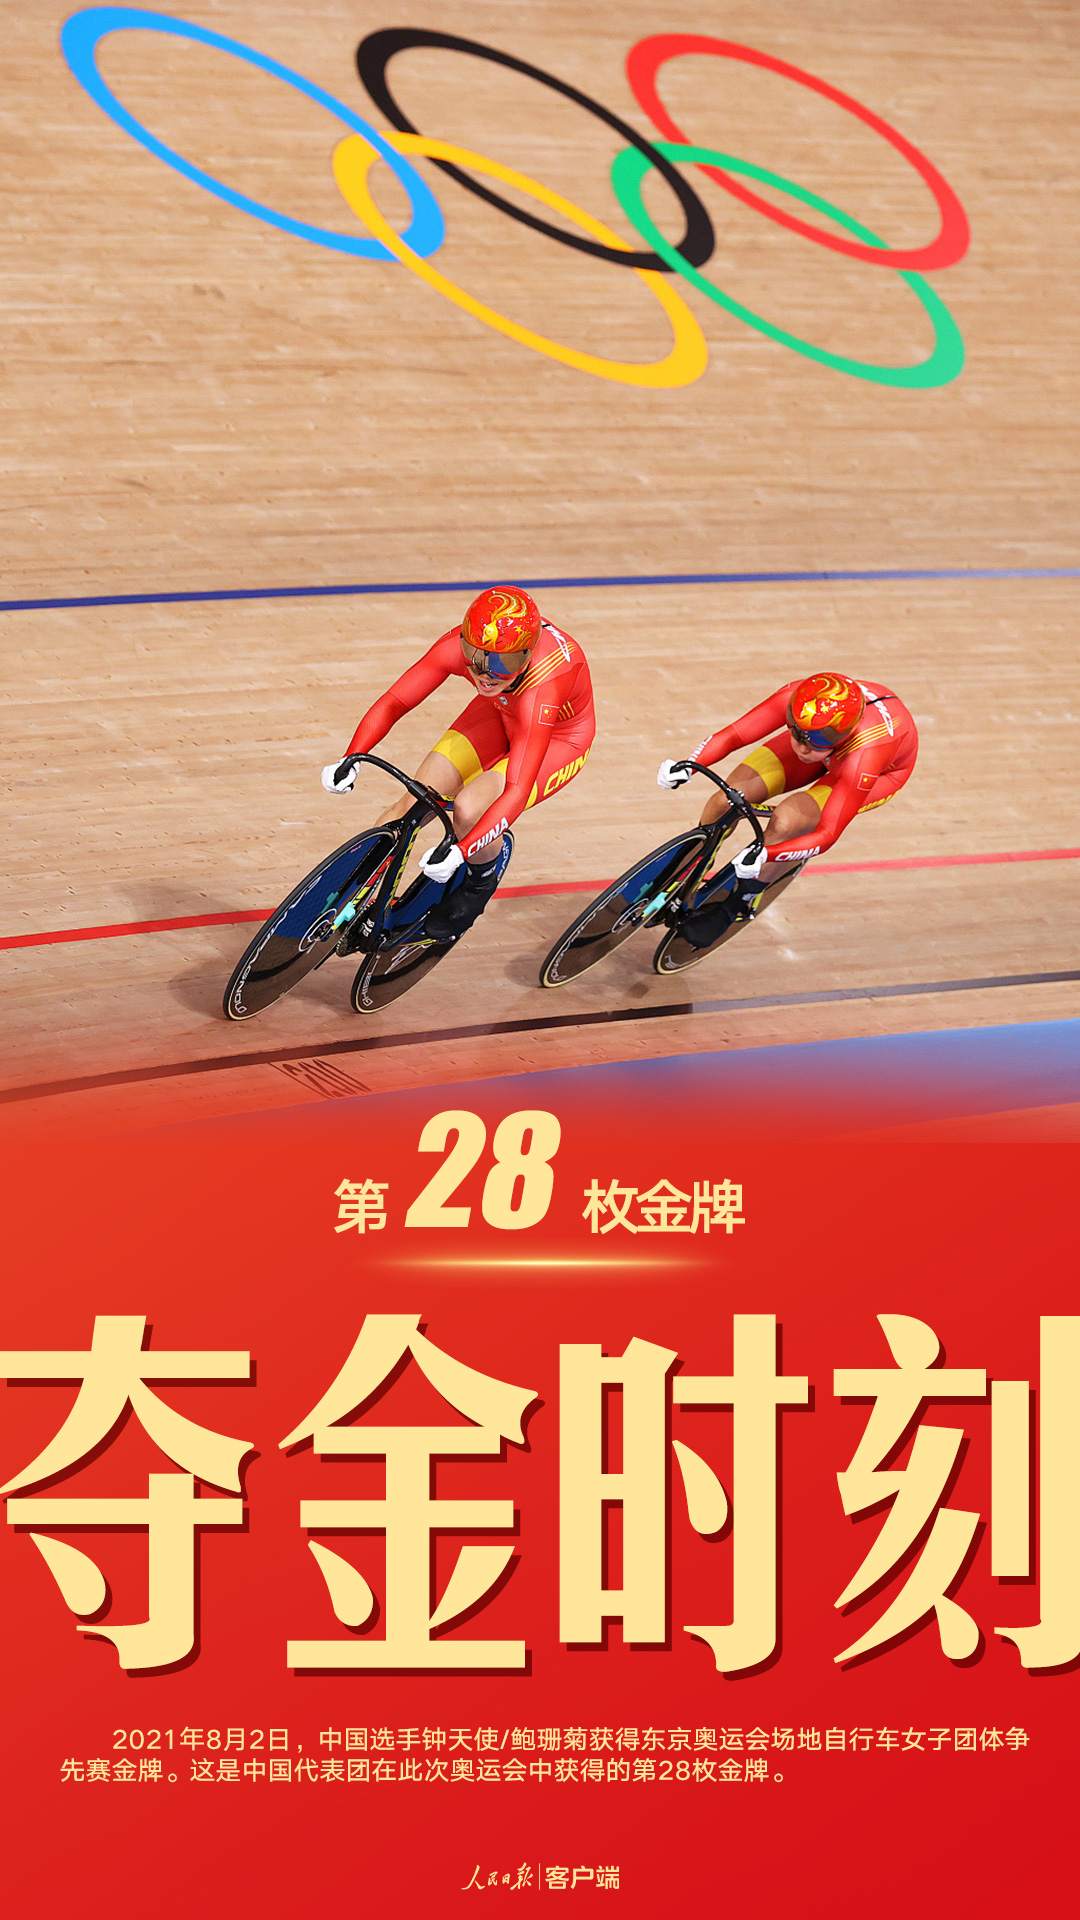 第28金！钟天使/鲍珊菊获场地自行车女子团体争先赛冠军